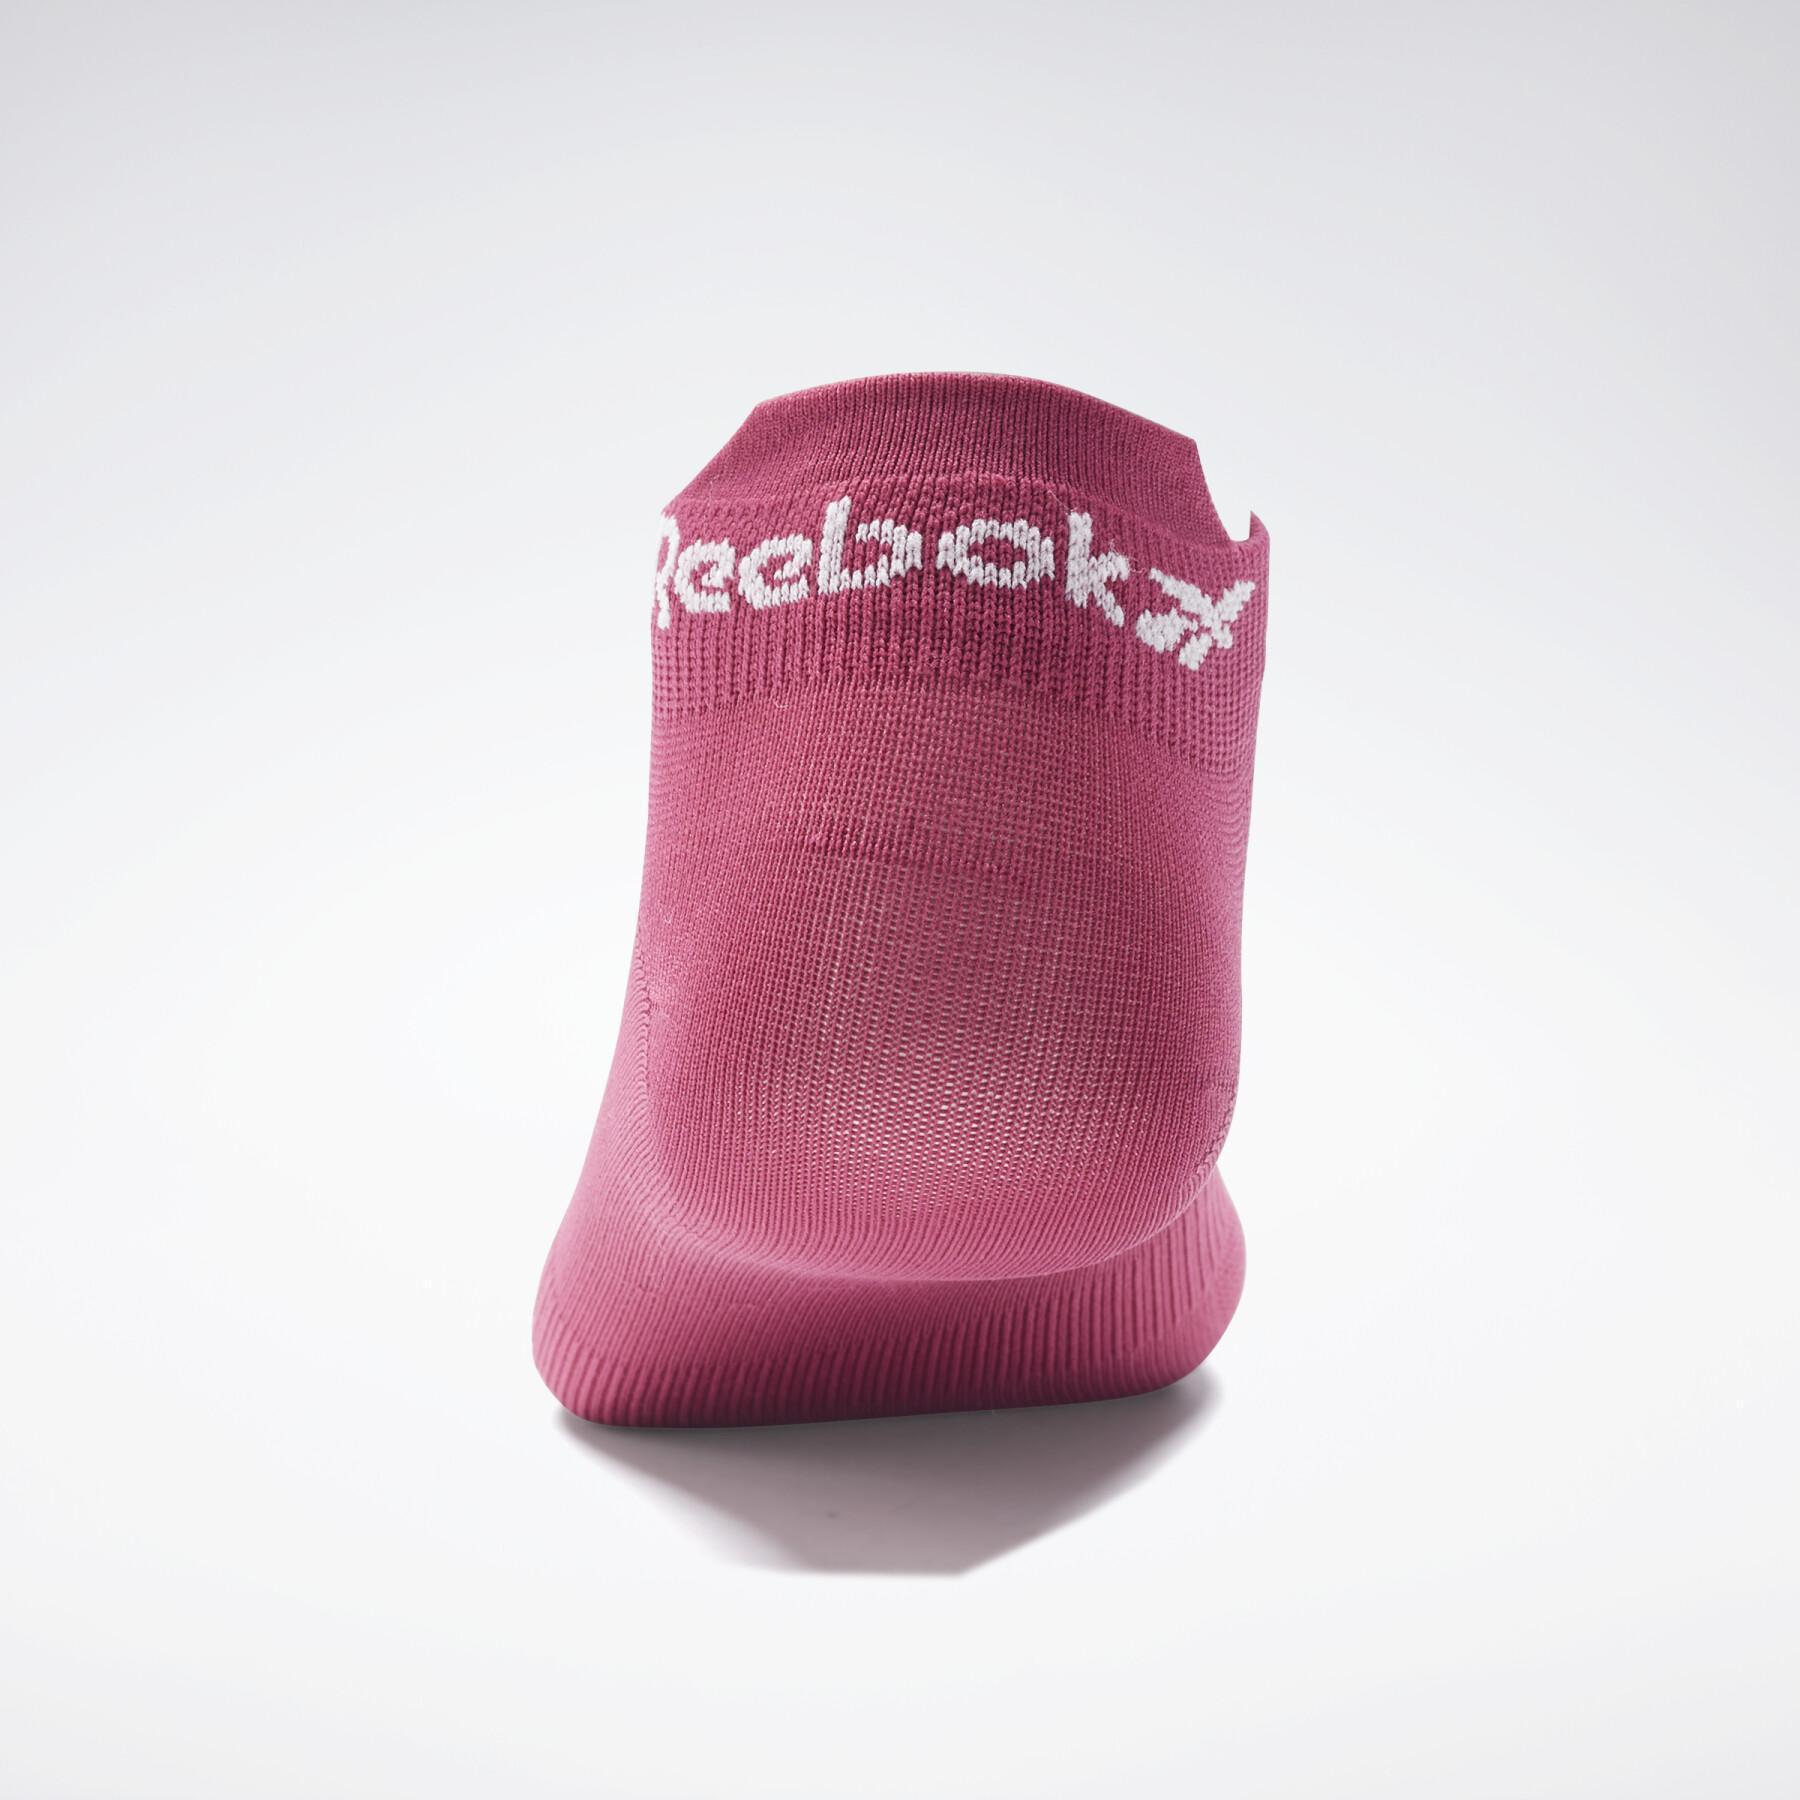 Packung mit 3 Paar niedrigen Socken für Frauen Reebok One Series